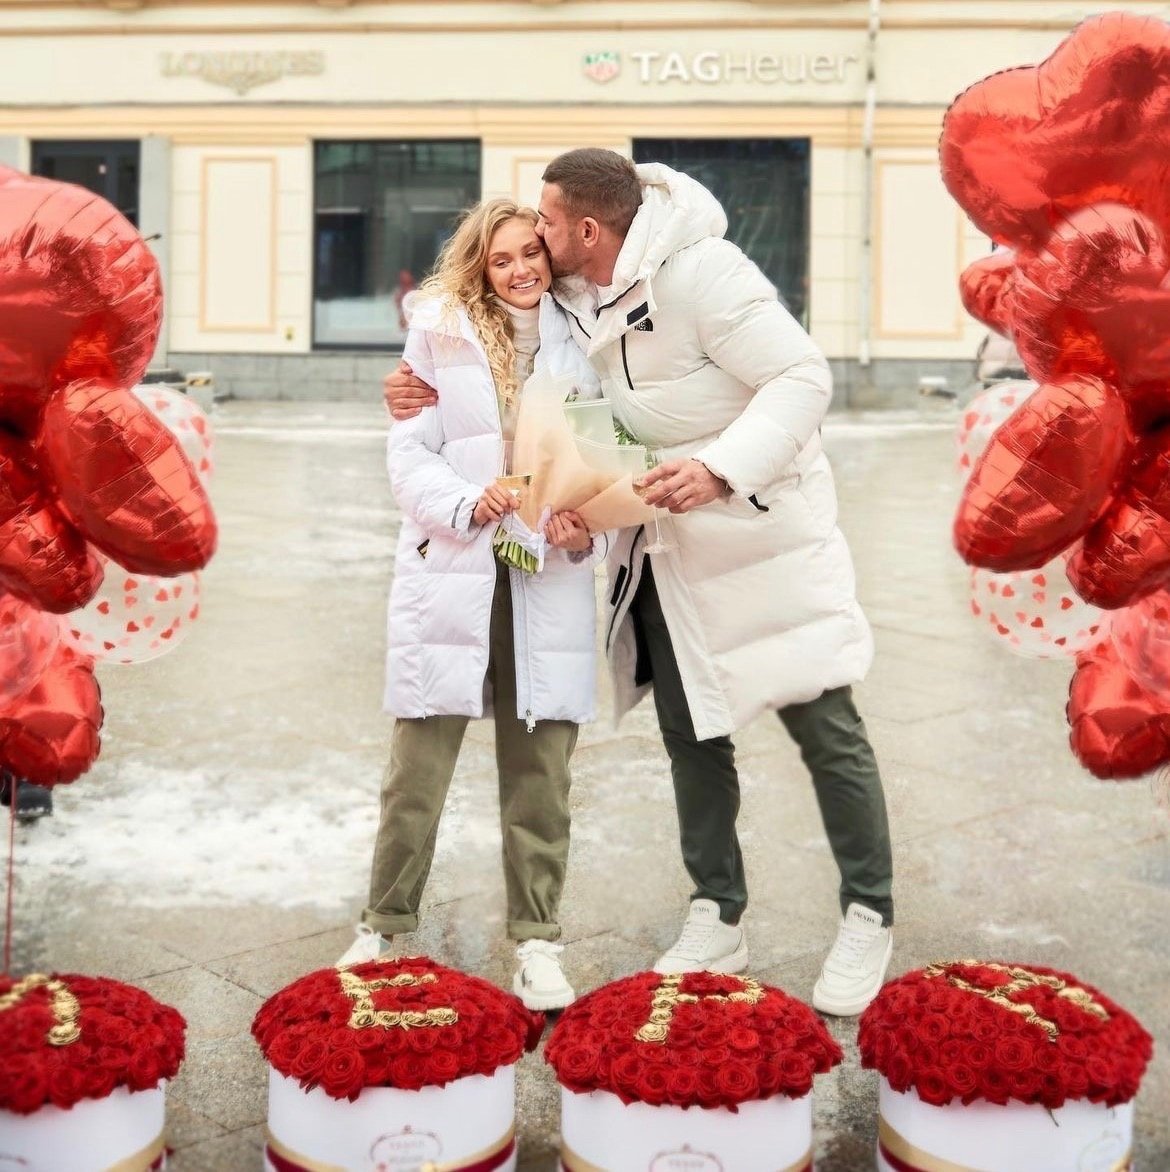 Ксения Бородина заявила, что стала счастливой после развода